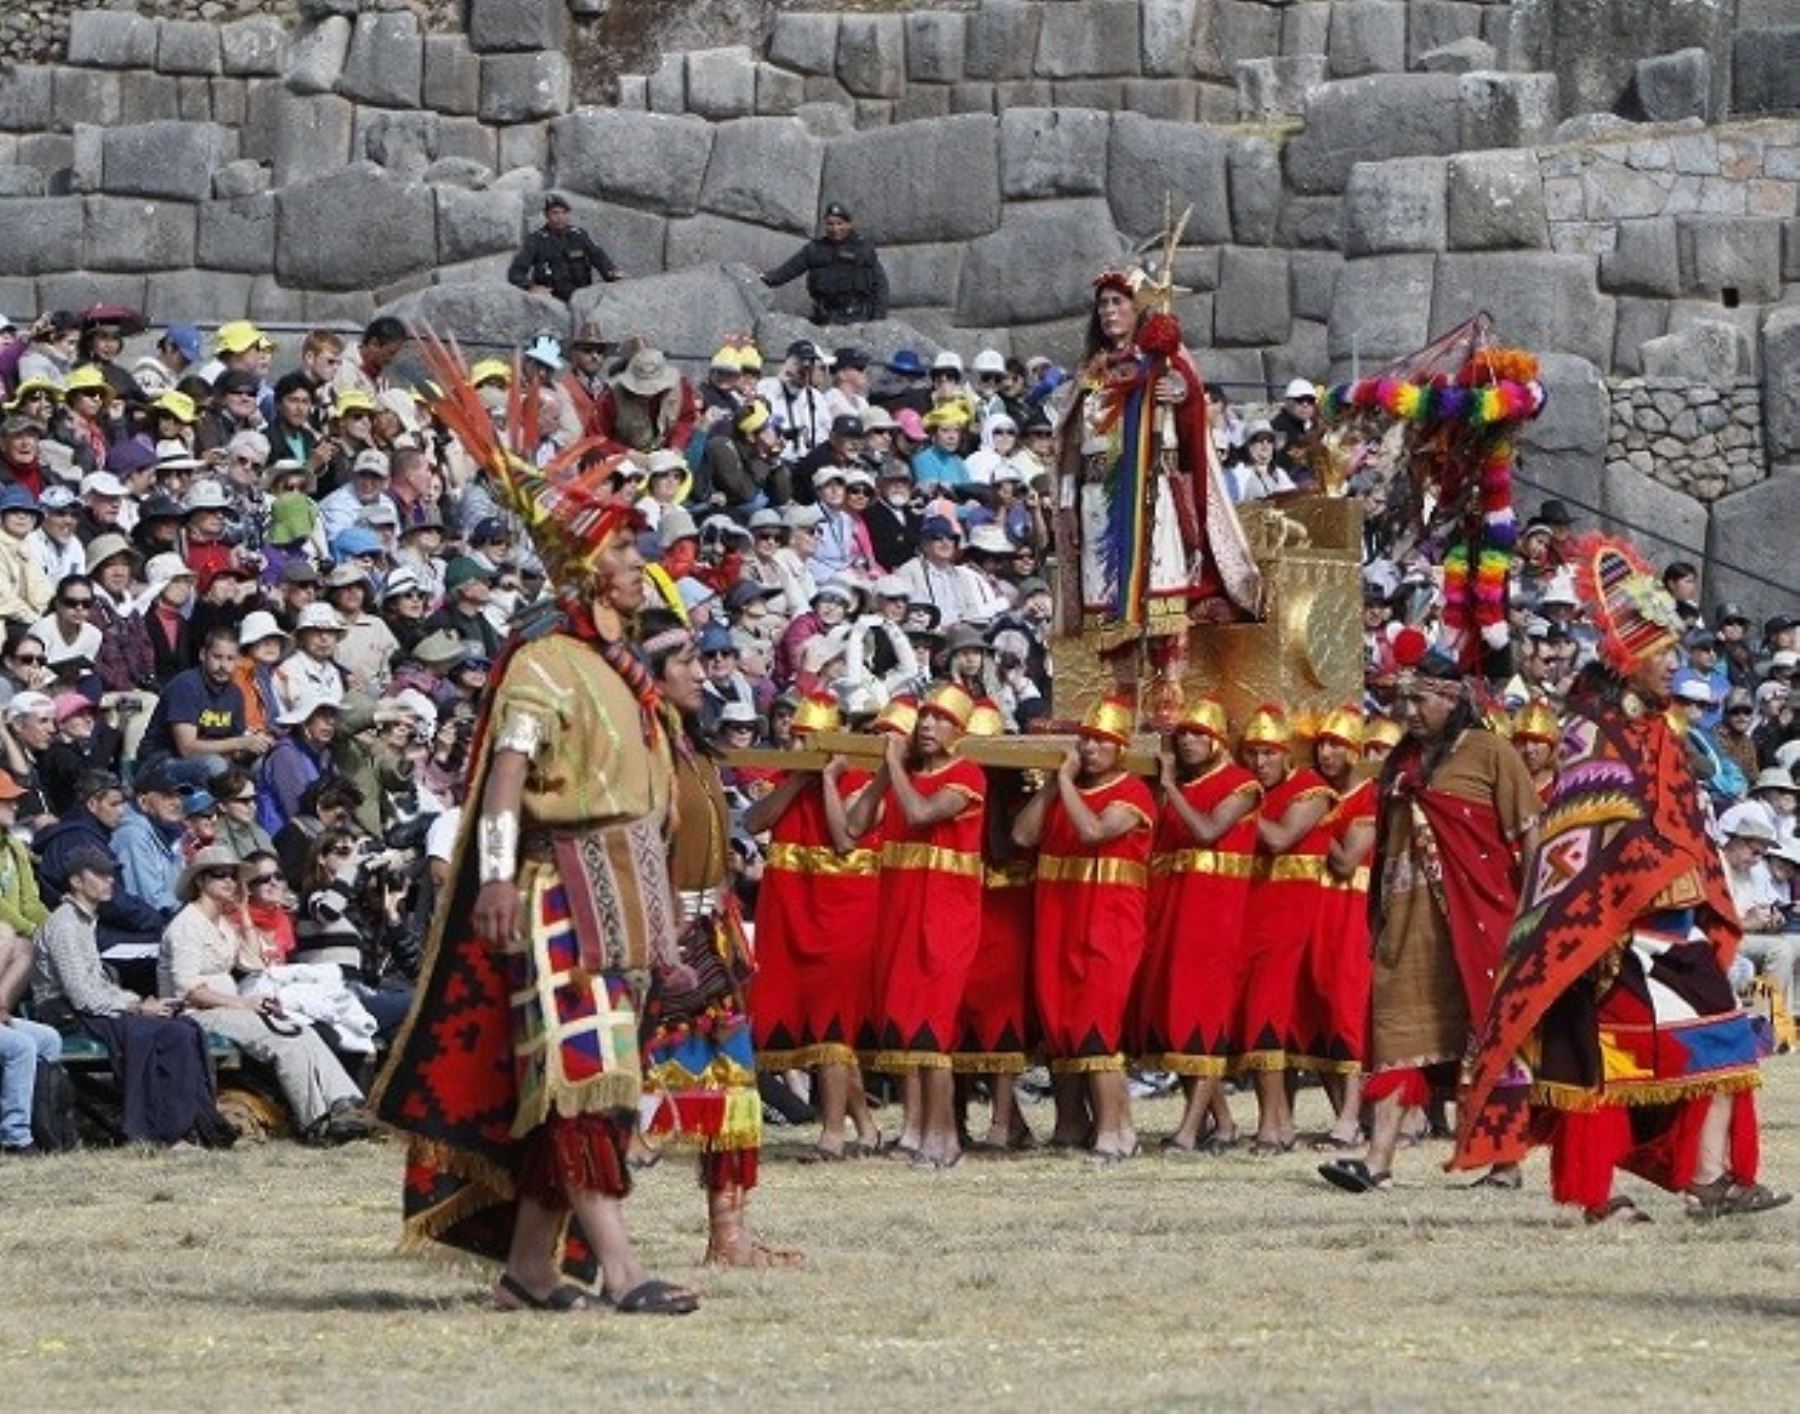 Emufec ya ha vendido más de 1,800 boletos para la escenificación del Inti Raymi, la tradicional Fiesta del Sol que se celebra en Cusco. Foto: ANDINA/Percy Hurtado.